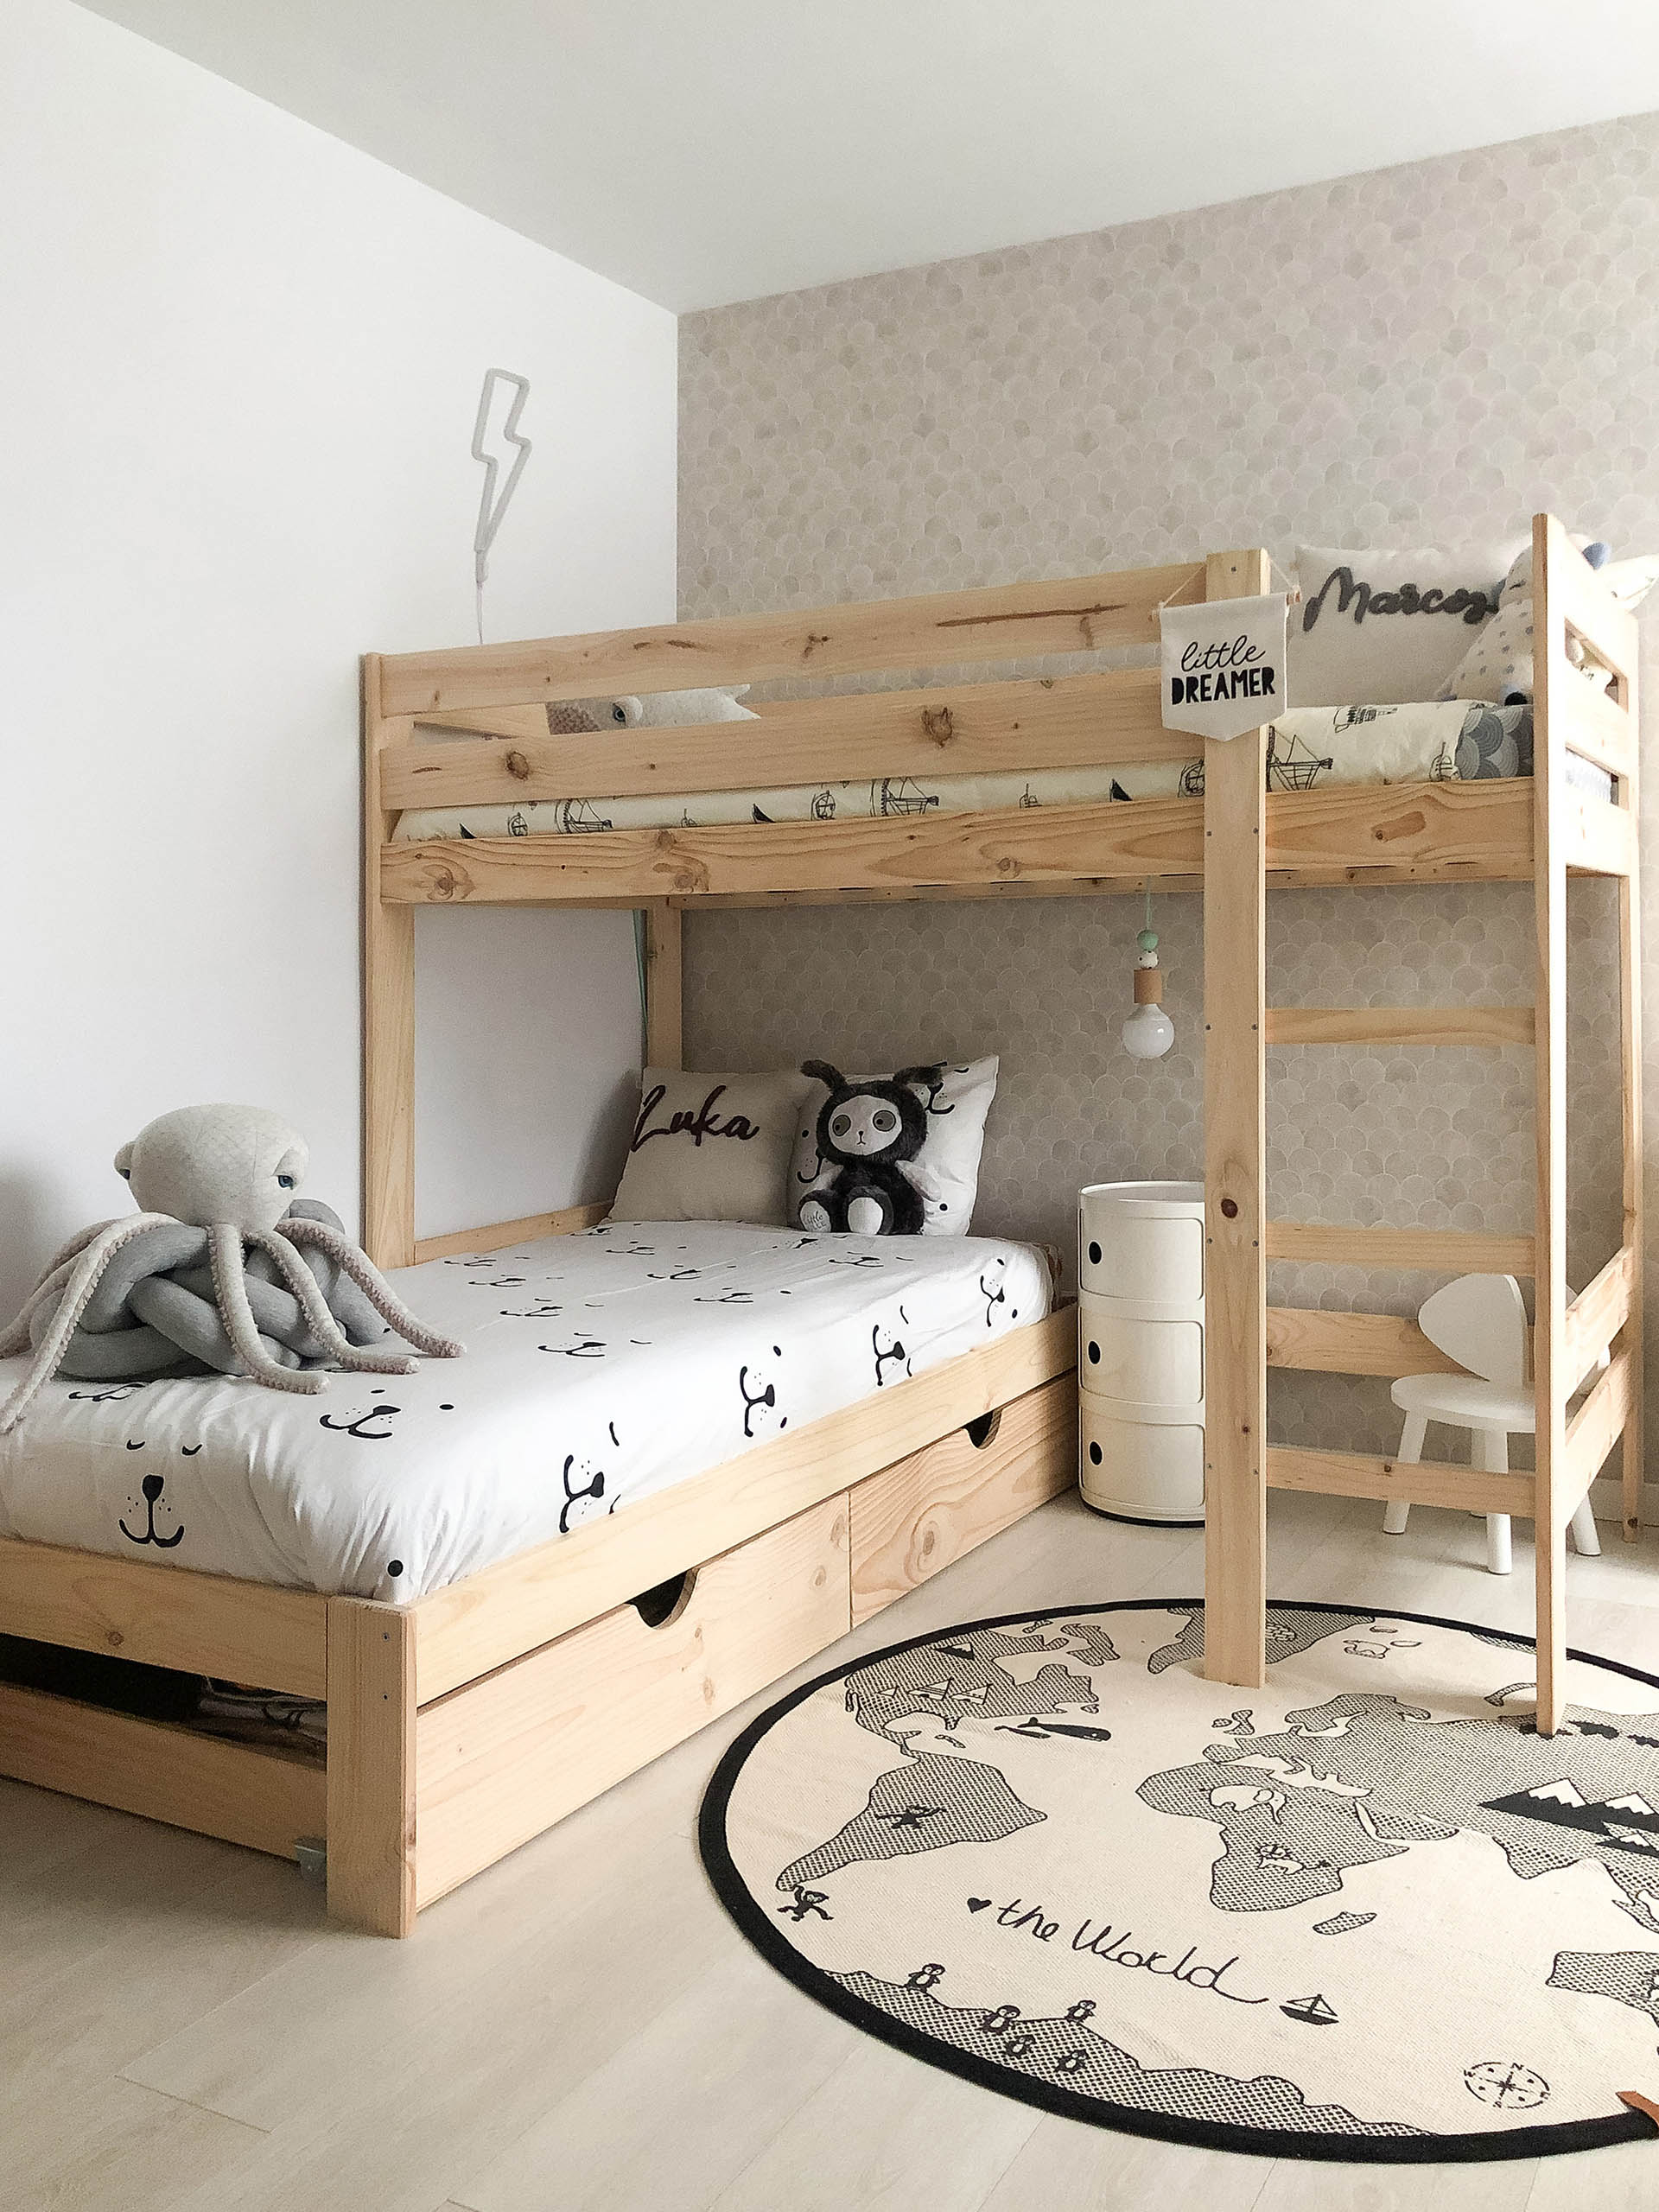 Decepcionado Delicioso Cuna Dormitorios donde huele a madera de verdad | Muebles LUFE